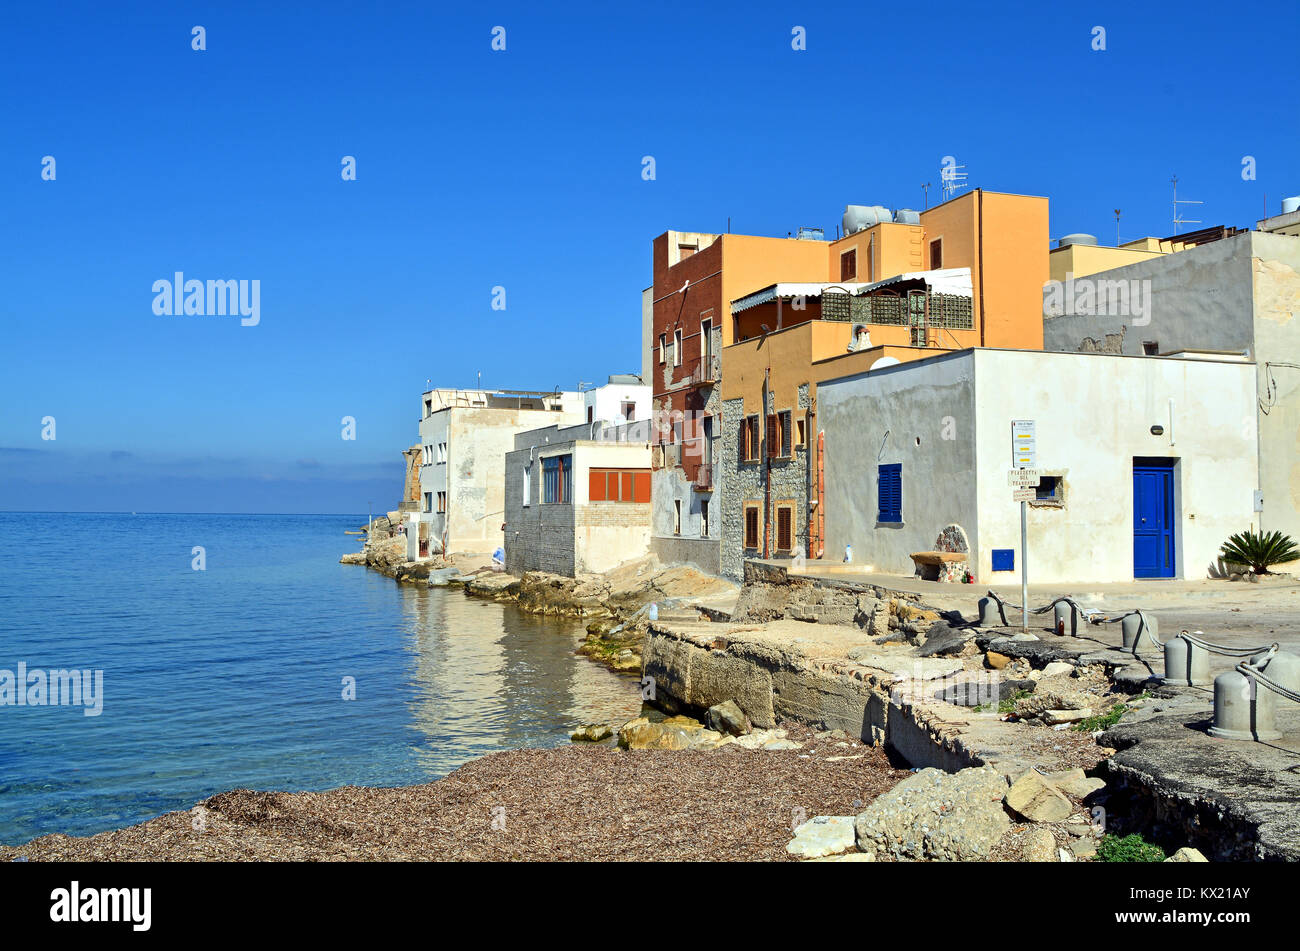 La punta occidentale della città costiera di Trapani in Sicilia (Italia);  semplici case bianche in parte riflessa nel mare, tutti sotto uno splendido  cielo blu Foto stock - Alamy